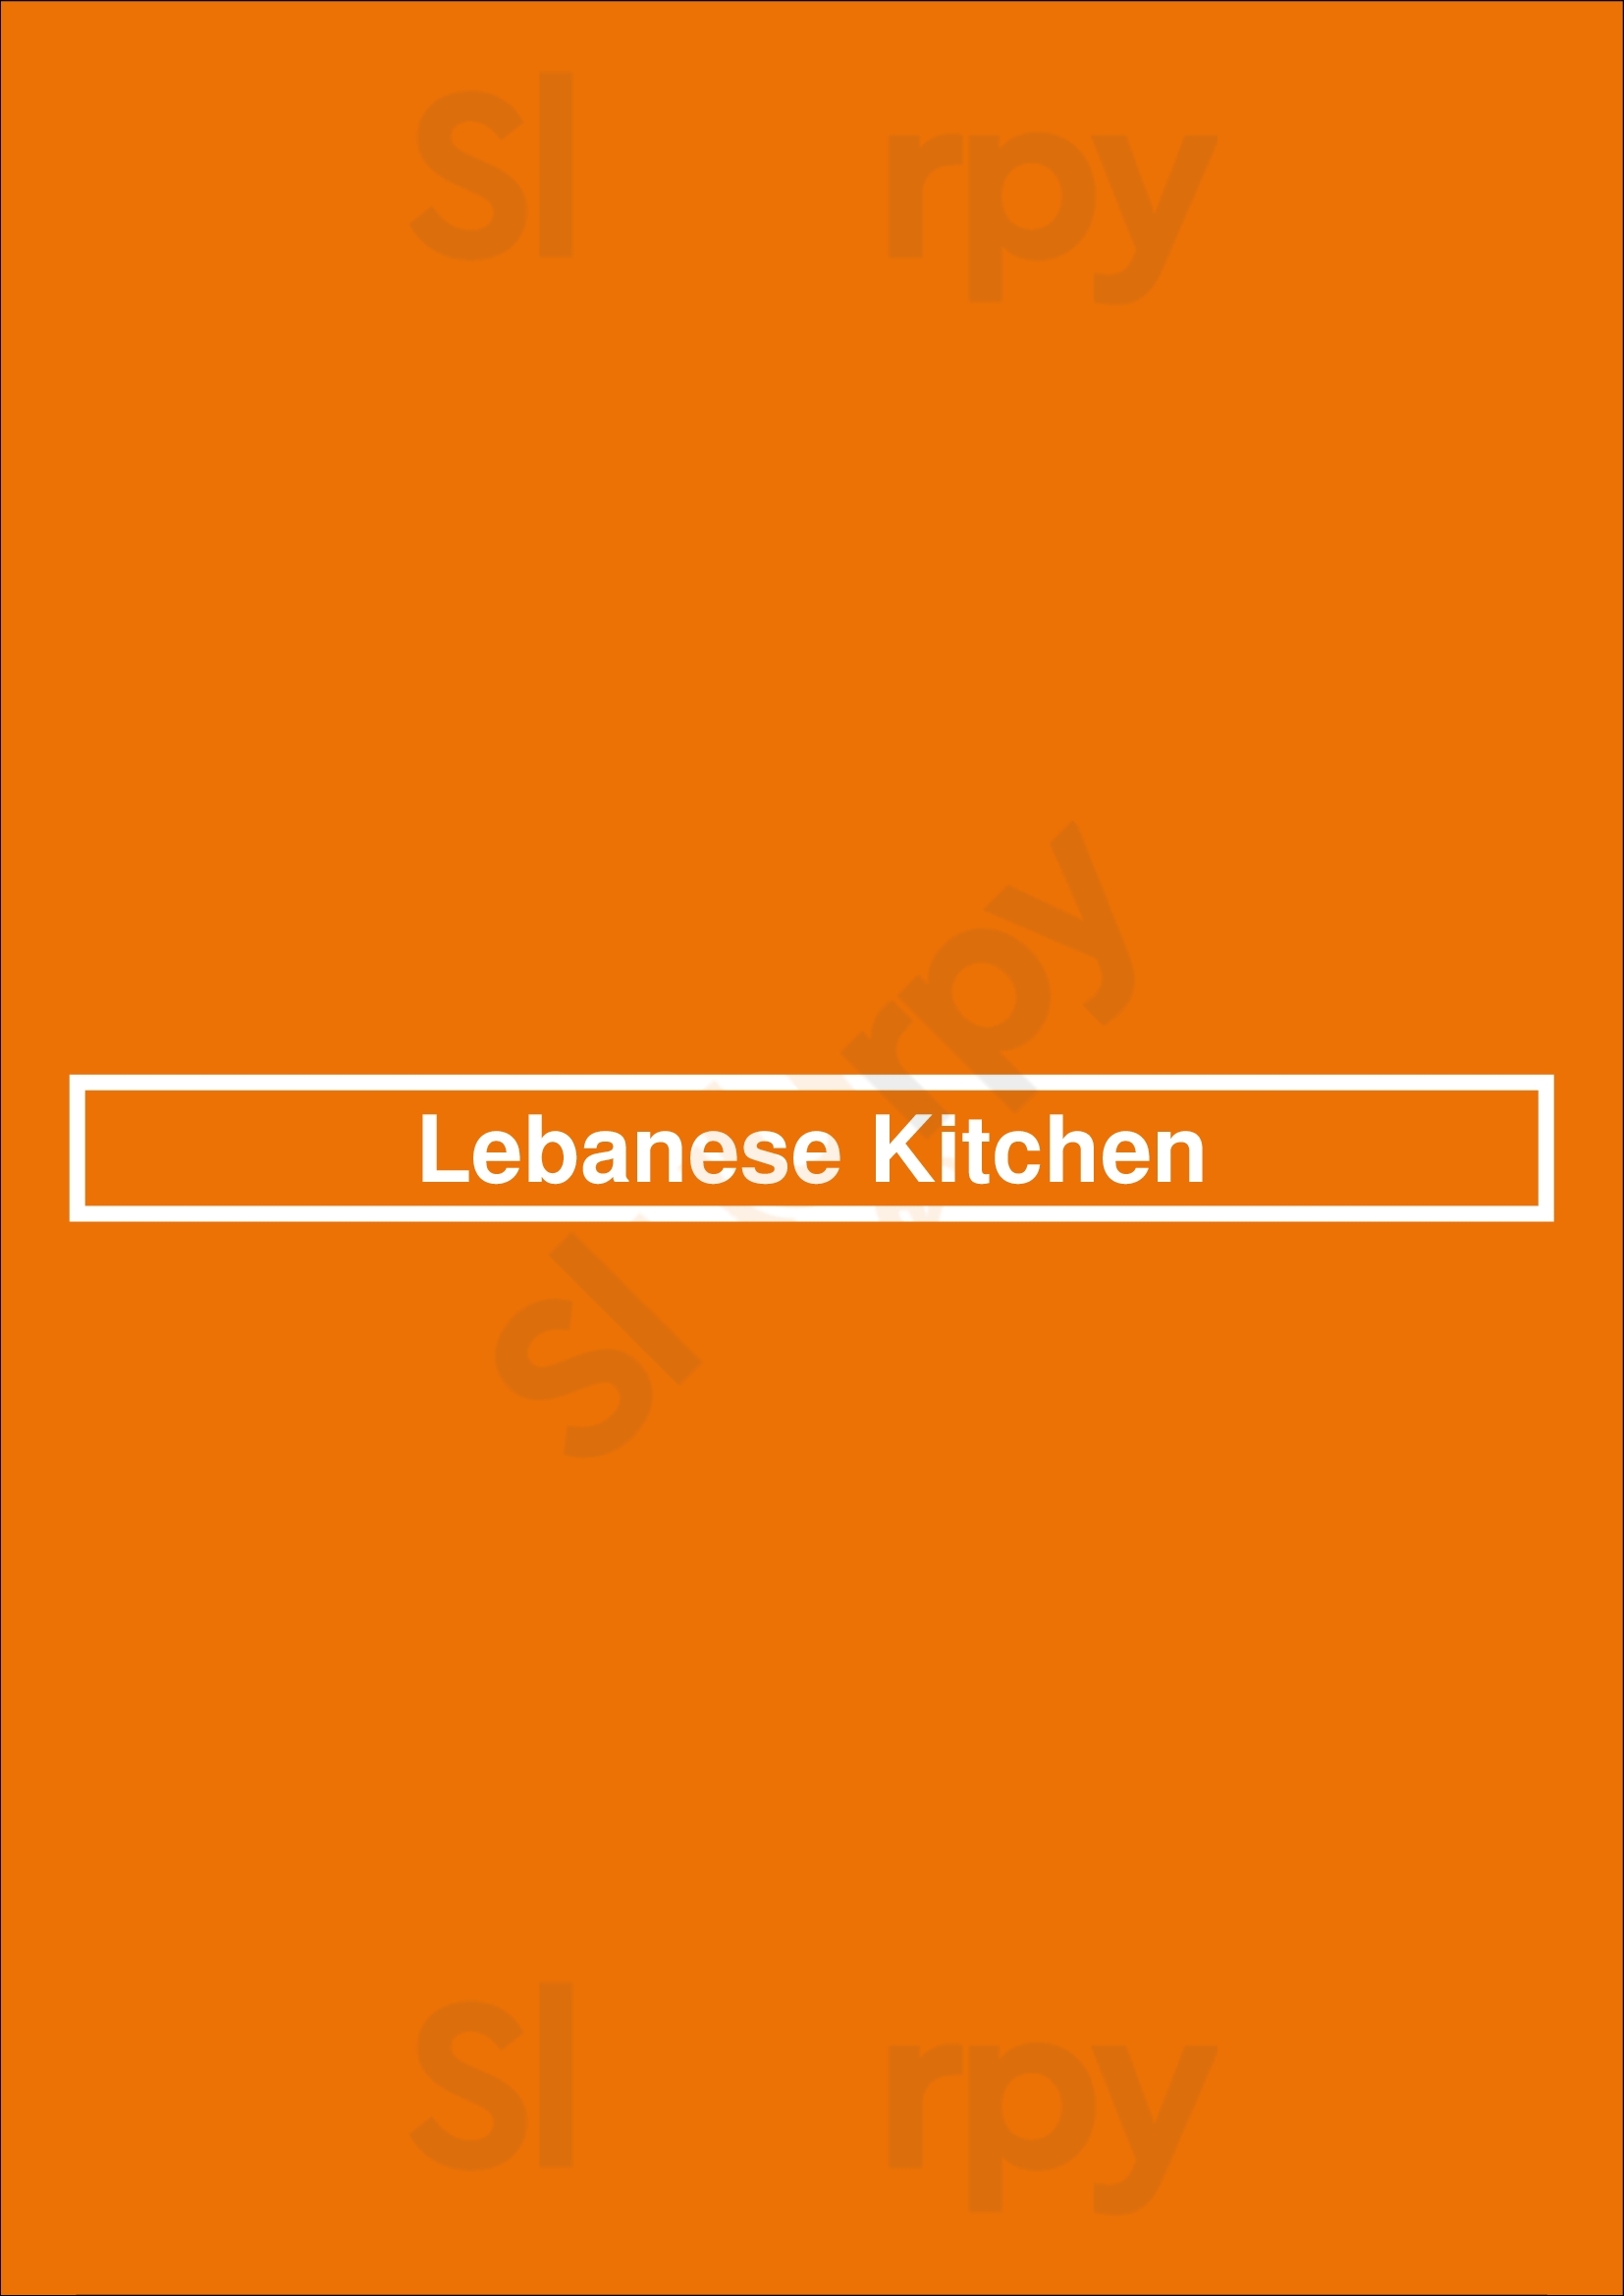 Lebanese Kitchen London Menu - 1